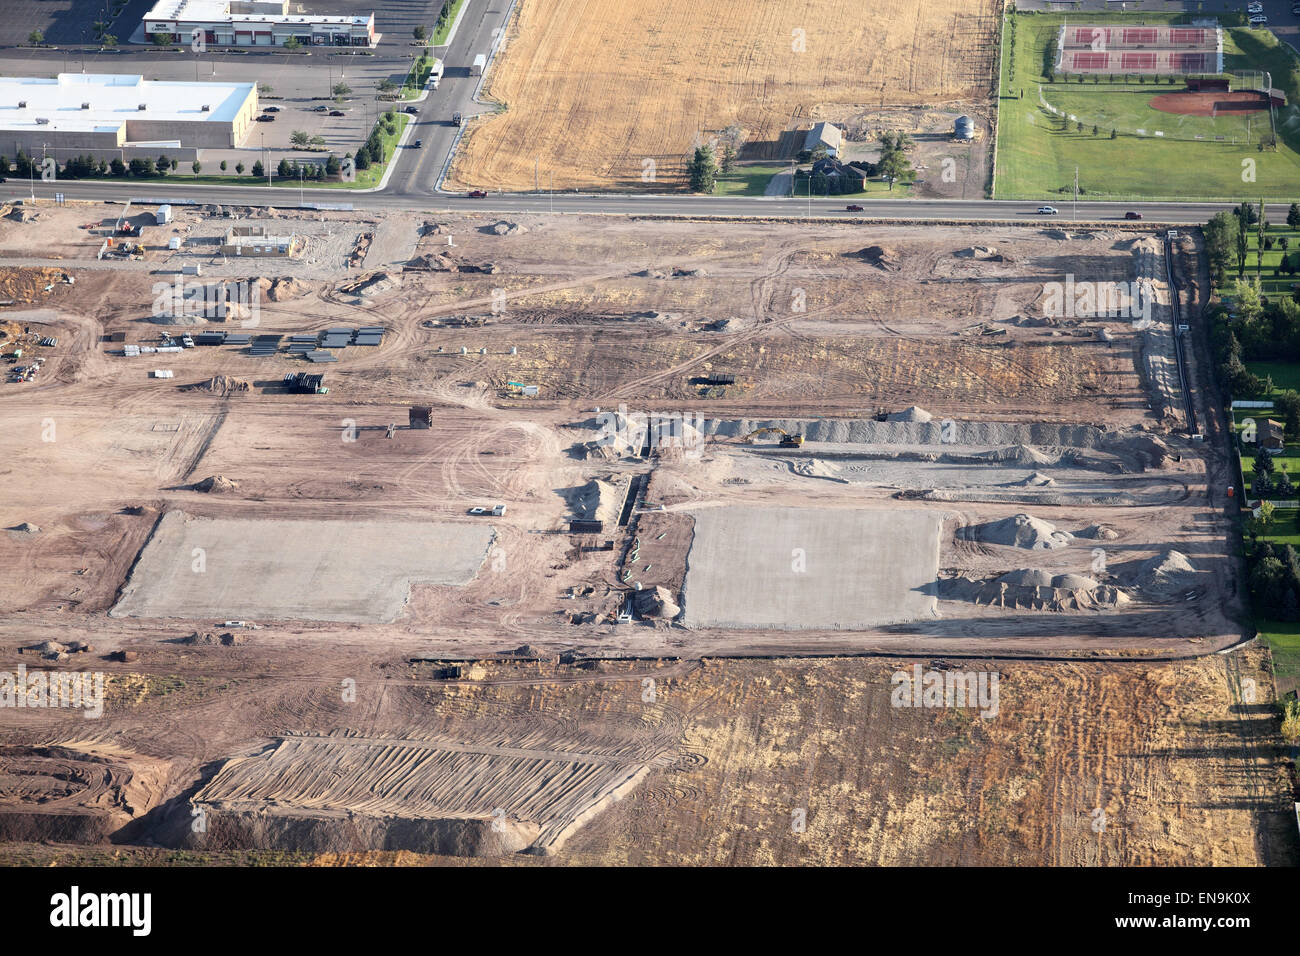 Un'immagine aerea di un commercial real estate development in costruzione Foto Stock